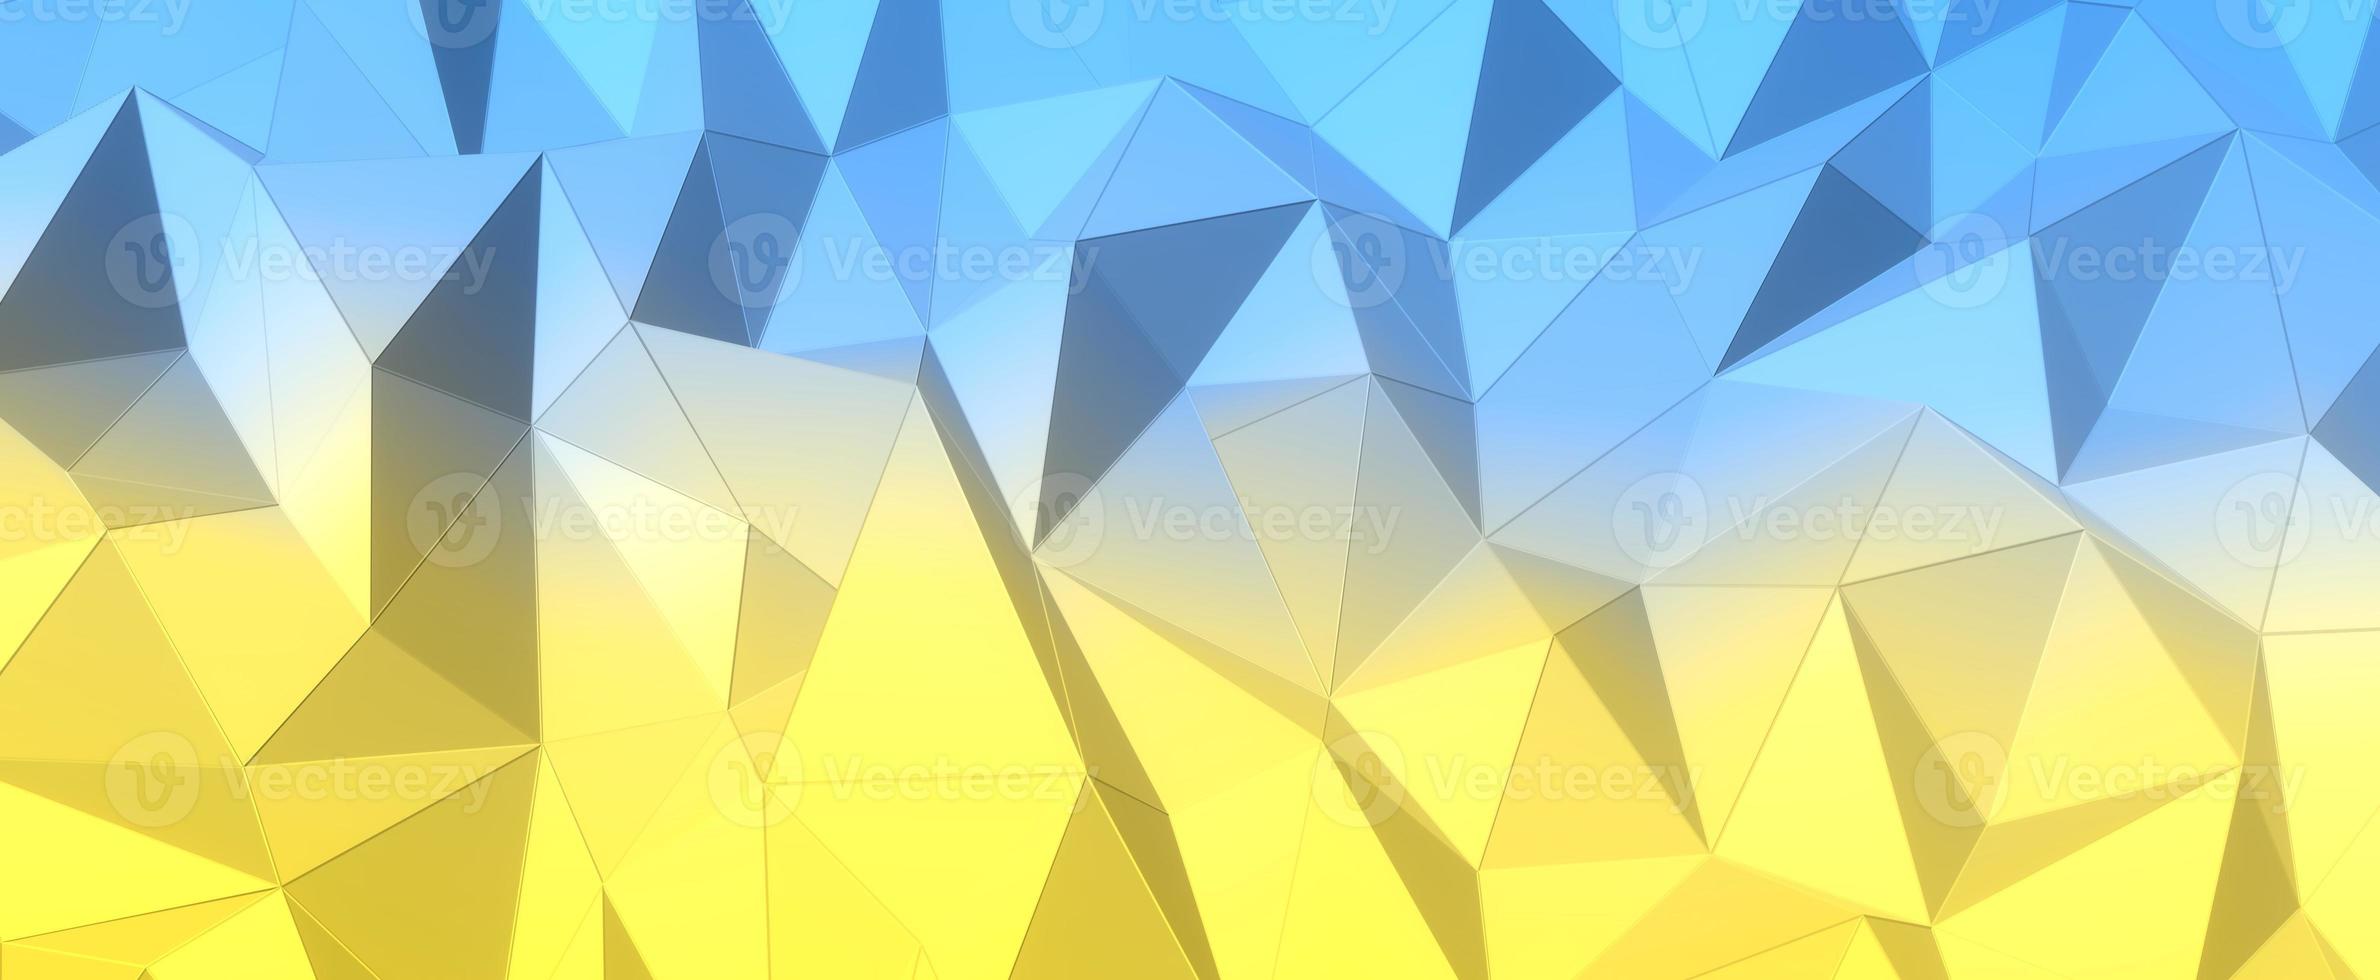 fond jaune bleu polygonale. couleurs abstraites du drapeau ukrainien. collines géométriques avec maillage de rendu 3d. textures numériques triangulaires empilées dans des formations créatives avec un intérieur futuriste photo